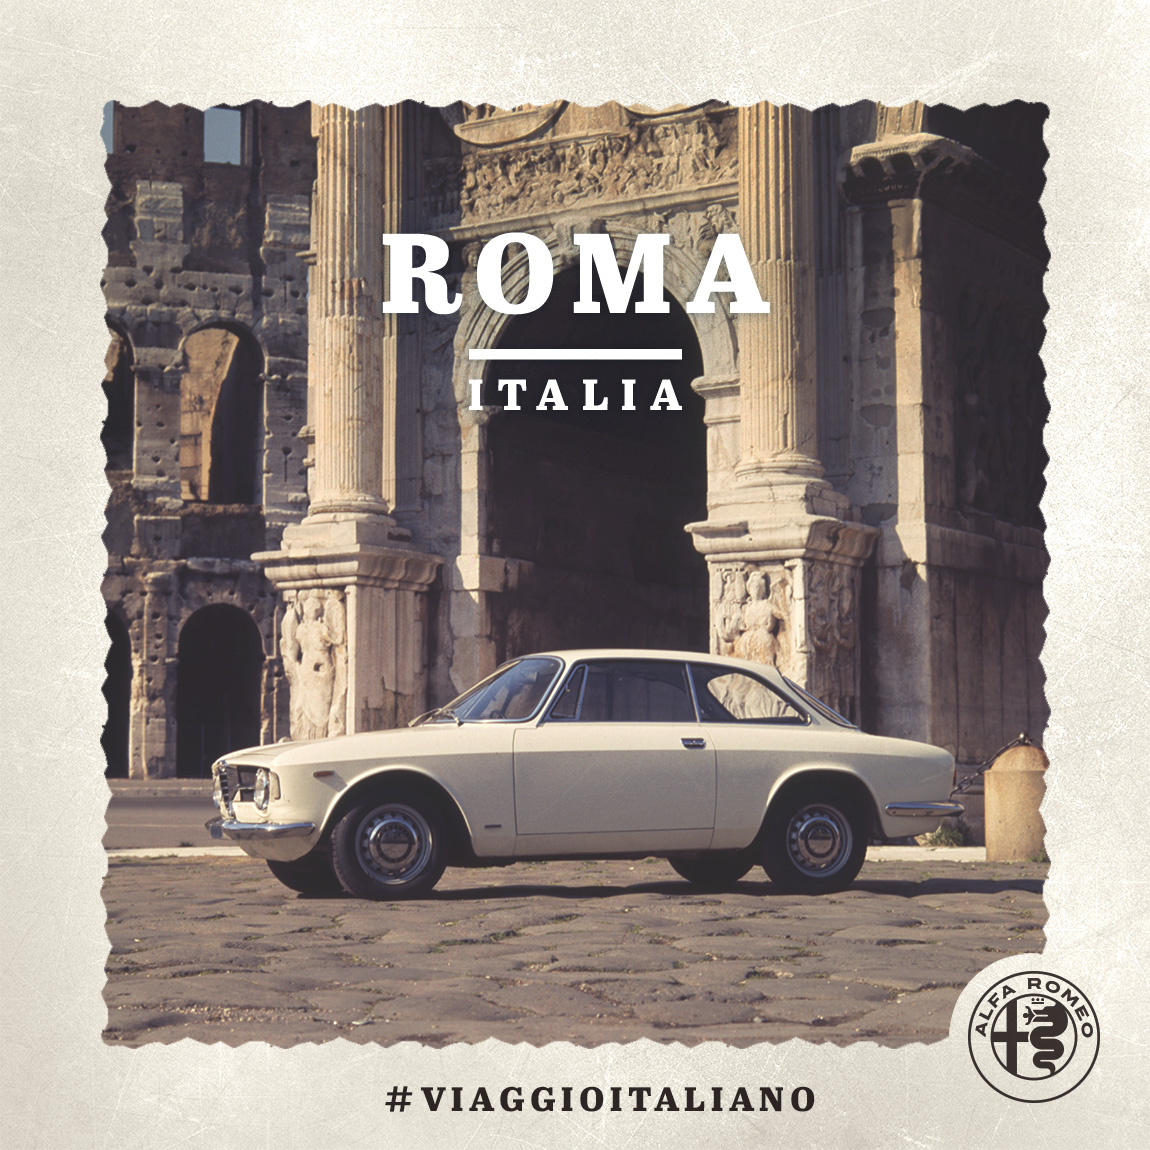 Immagine di un'auto Alfa Romeo a Roma